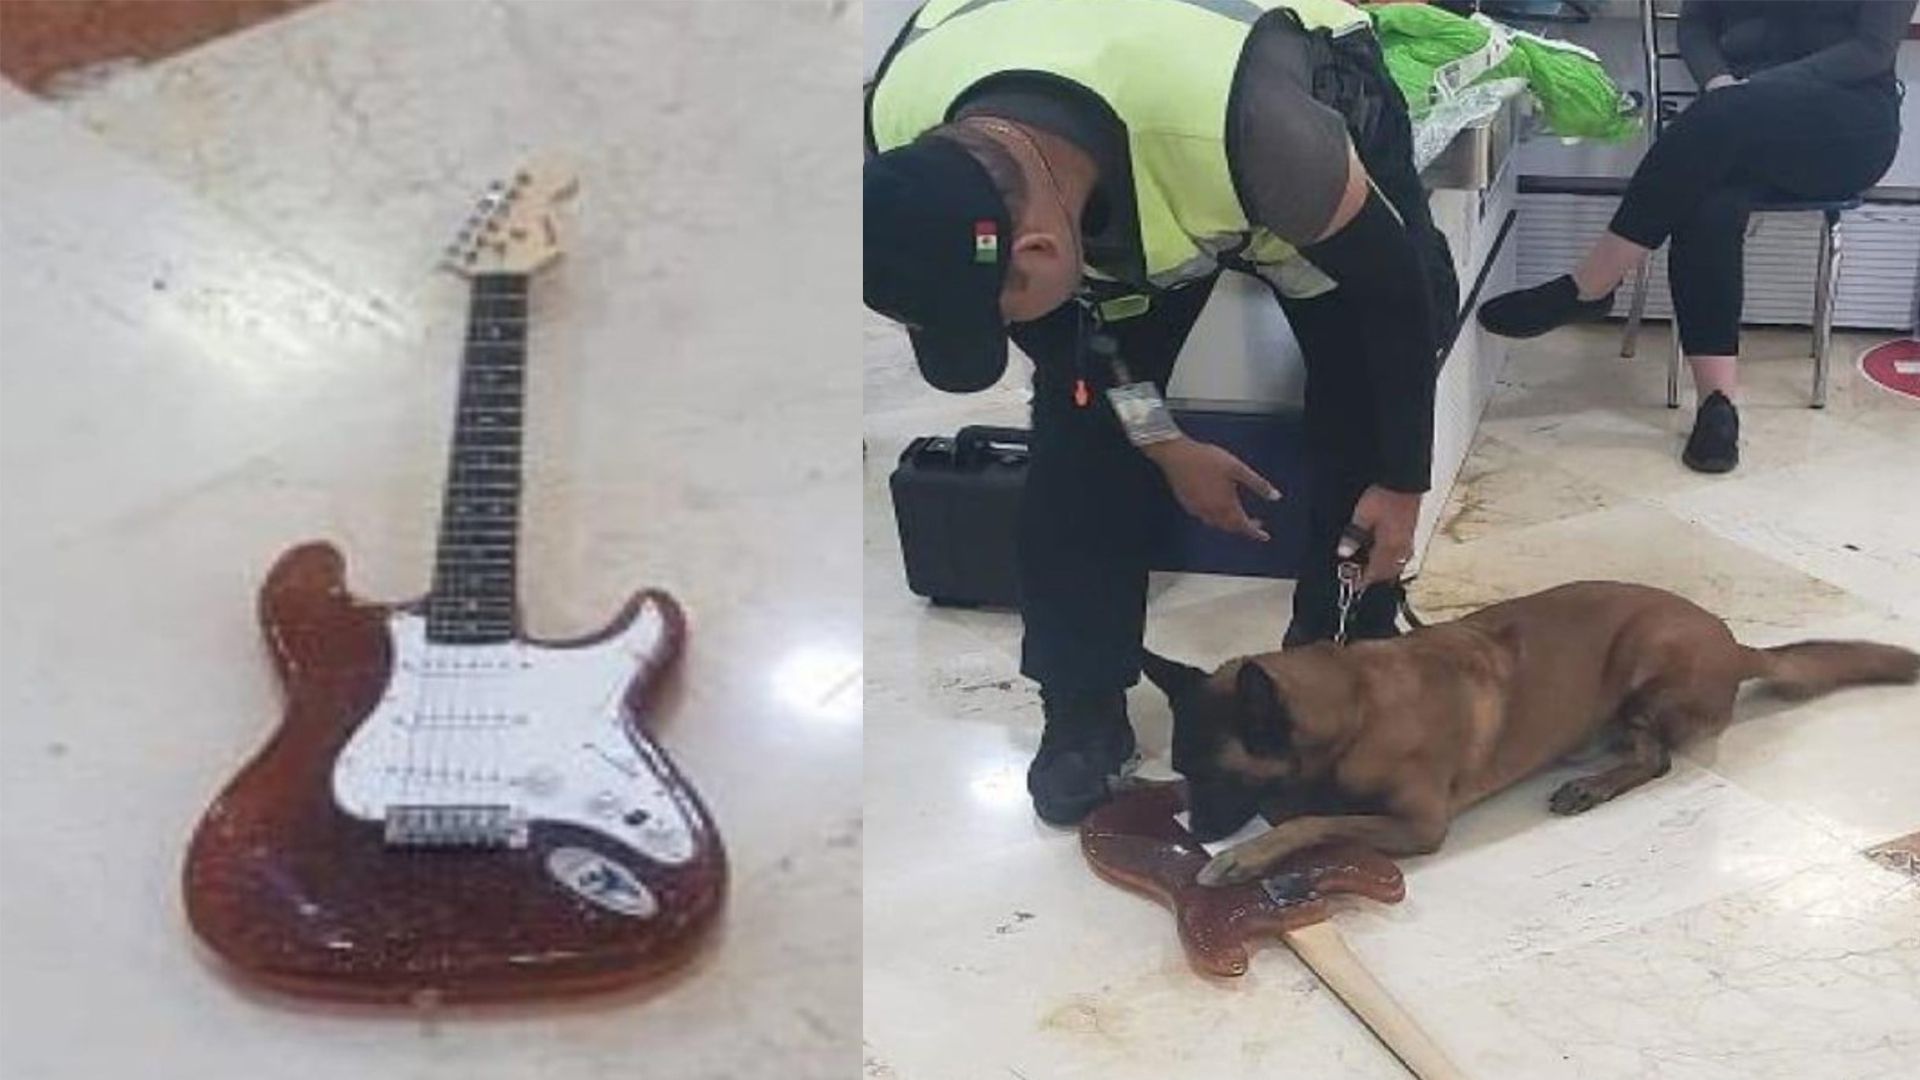 La guitarra tenía un peso anormal, razón que llevó a los agentes a examinarla más detenidamente (Foto: Twitter)